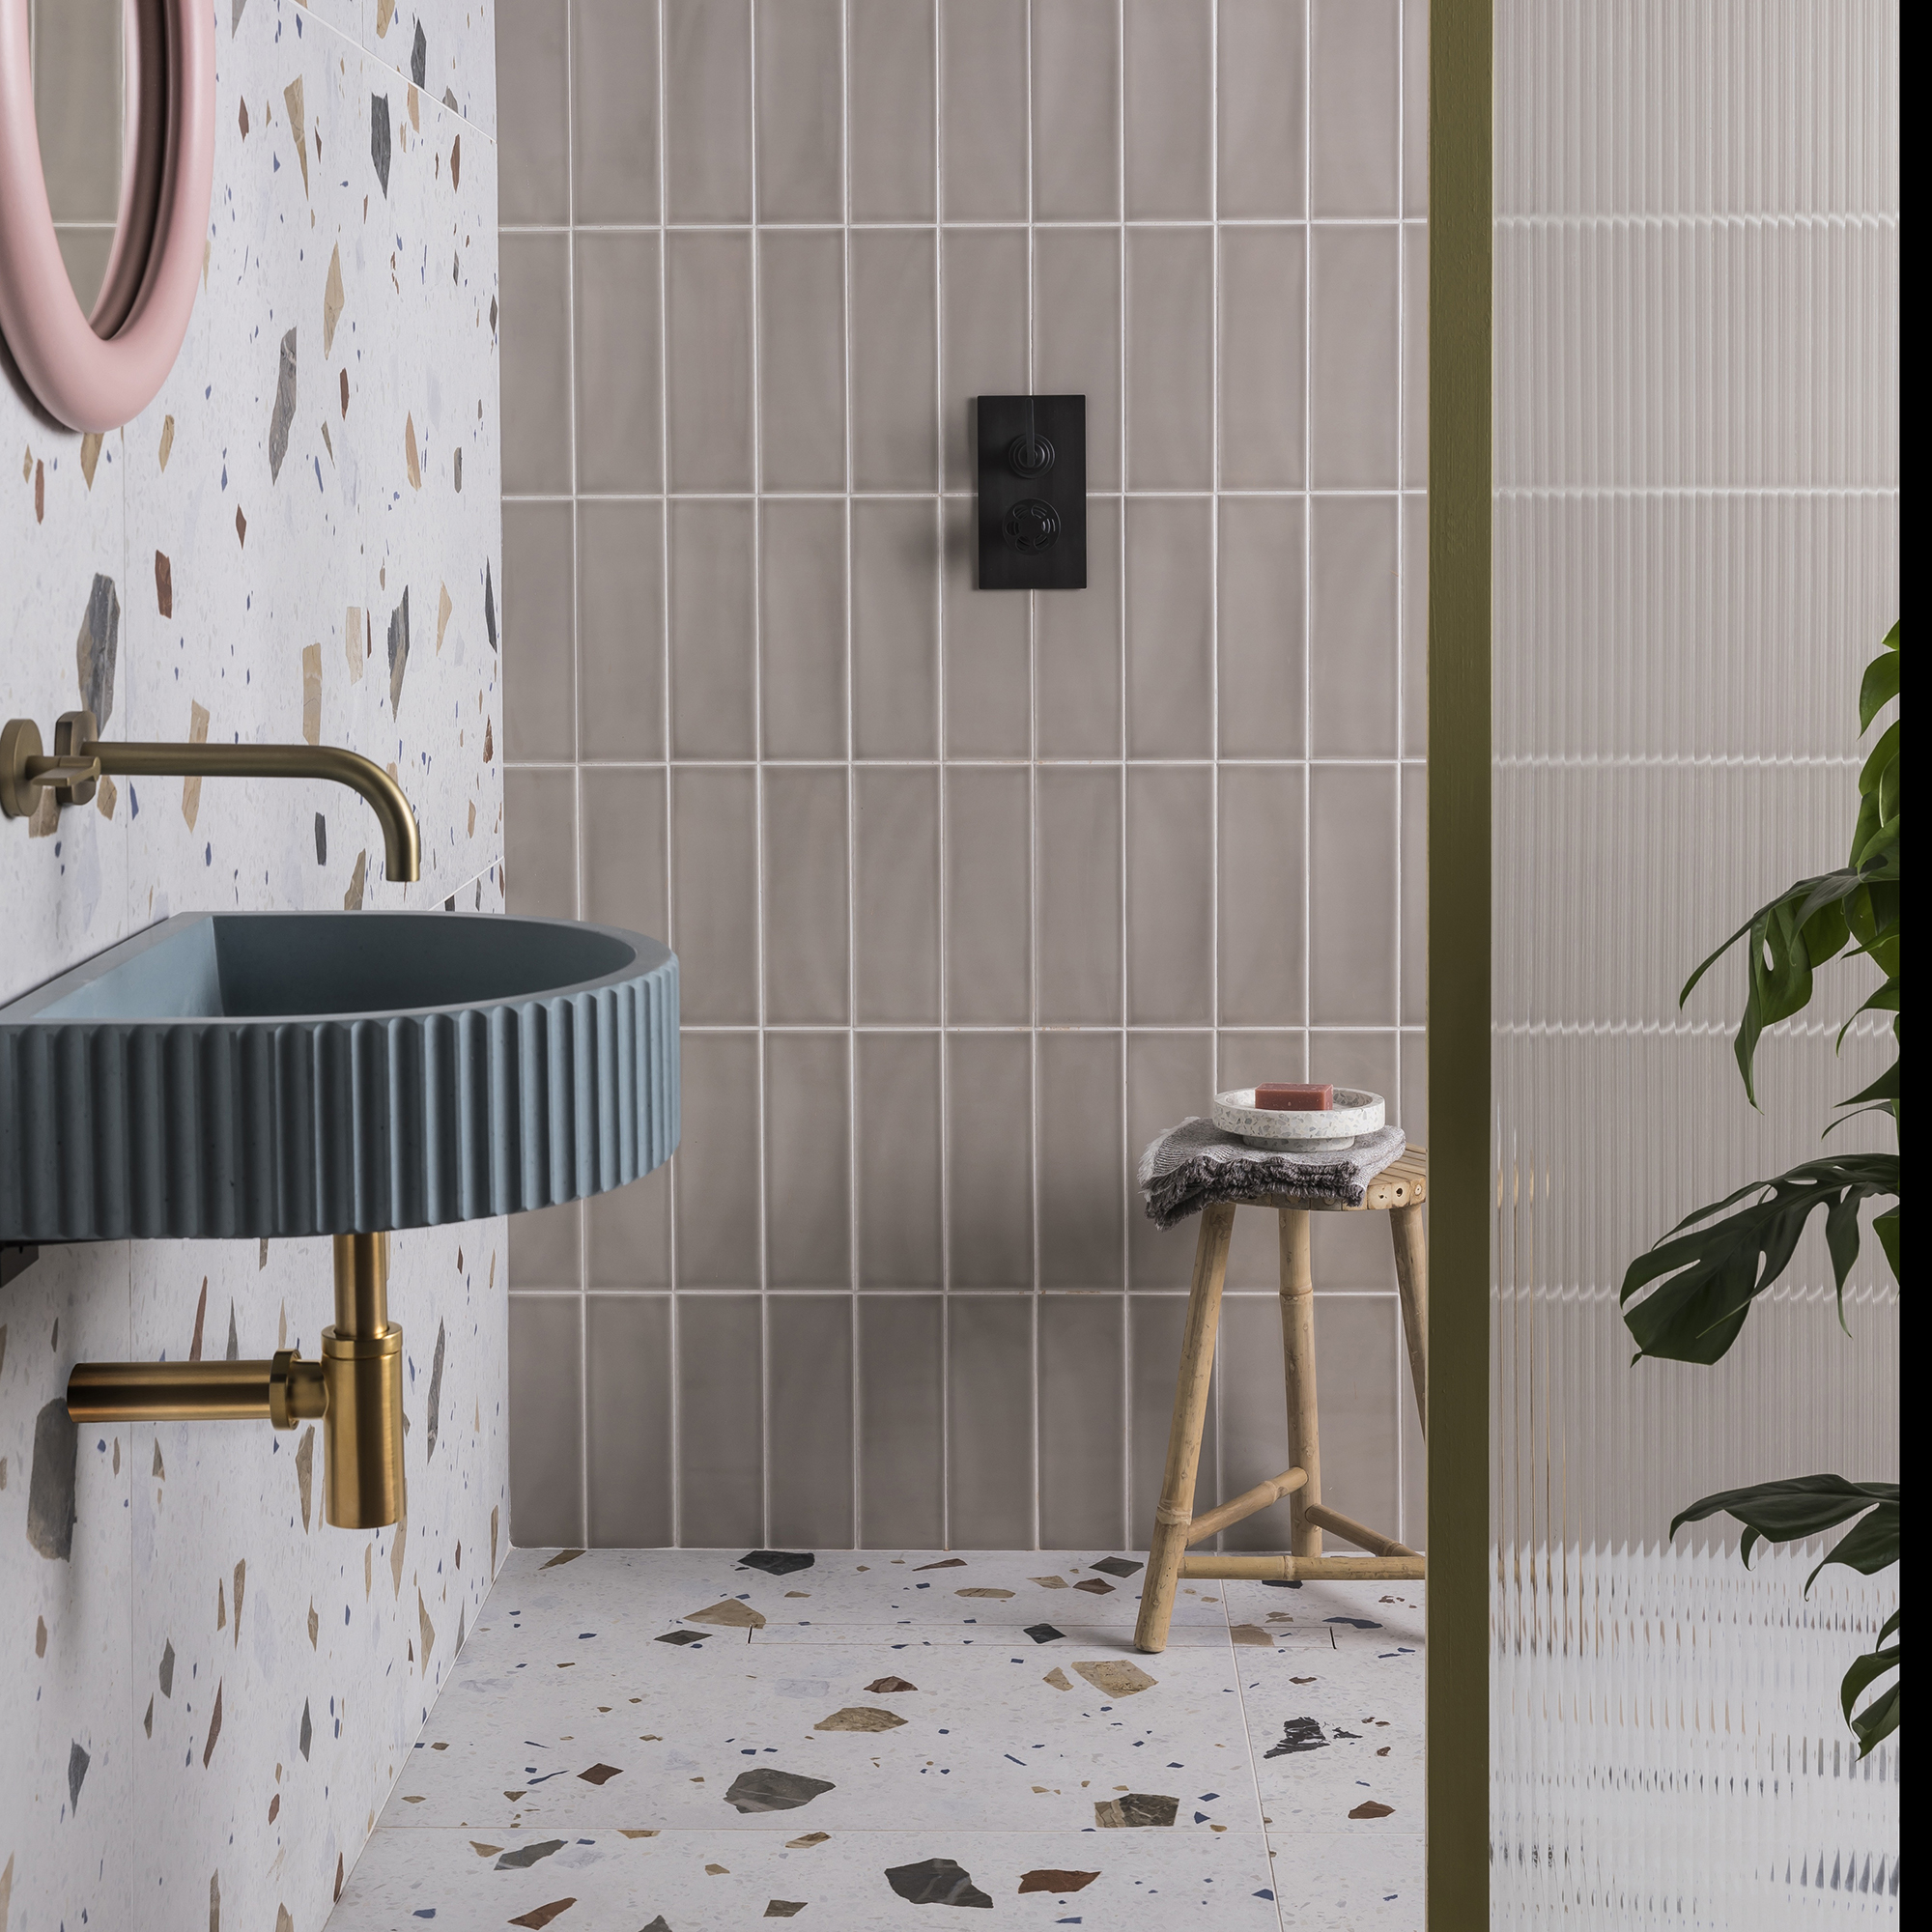 Baño moderno con lavabo flotante acanalado, grifo mezclador dorado en la pared, espejo rosa, azulejos grises en la pared y baldosas de terrazo en el suelo